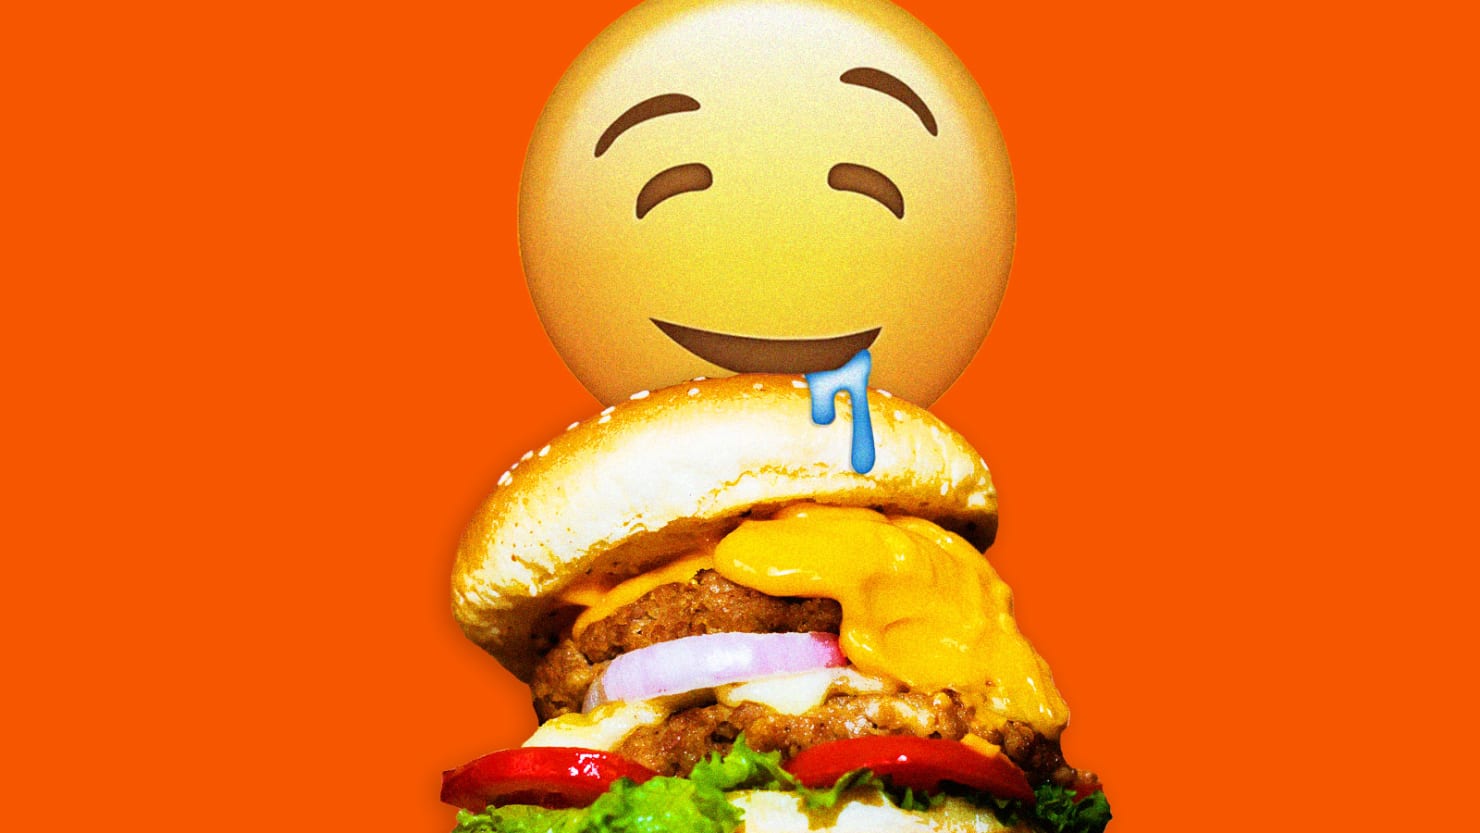 Las hamburguesas sin carne no deberían ser ‘saludables’, deberían ser sabrosas